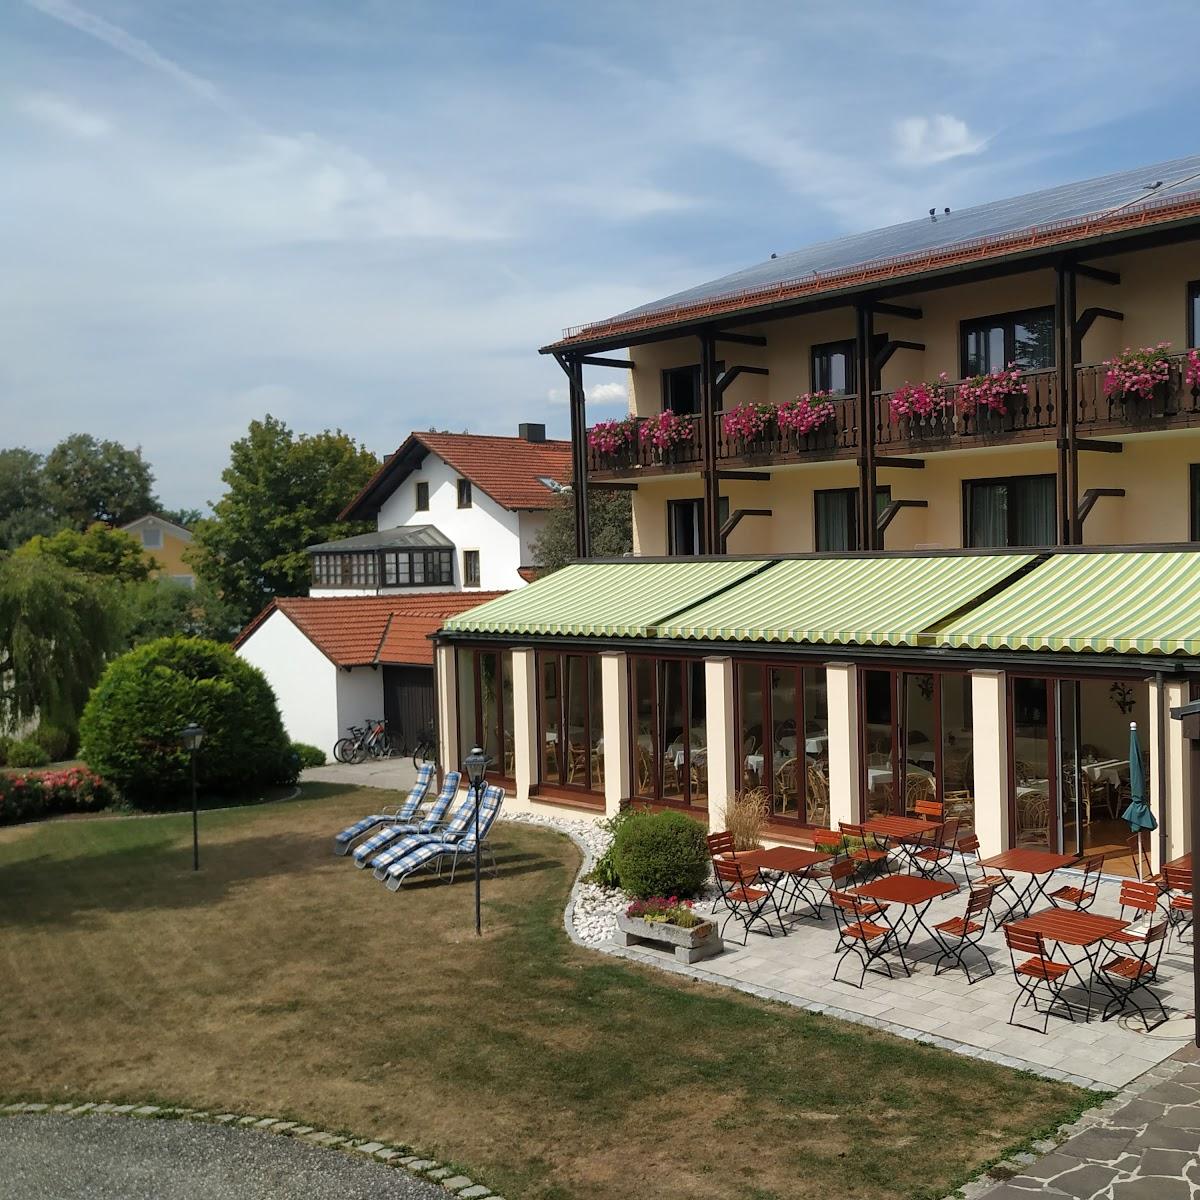 Restaurant "Gräfliches Hotel Alte Post" in Bad Birnbach